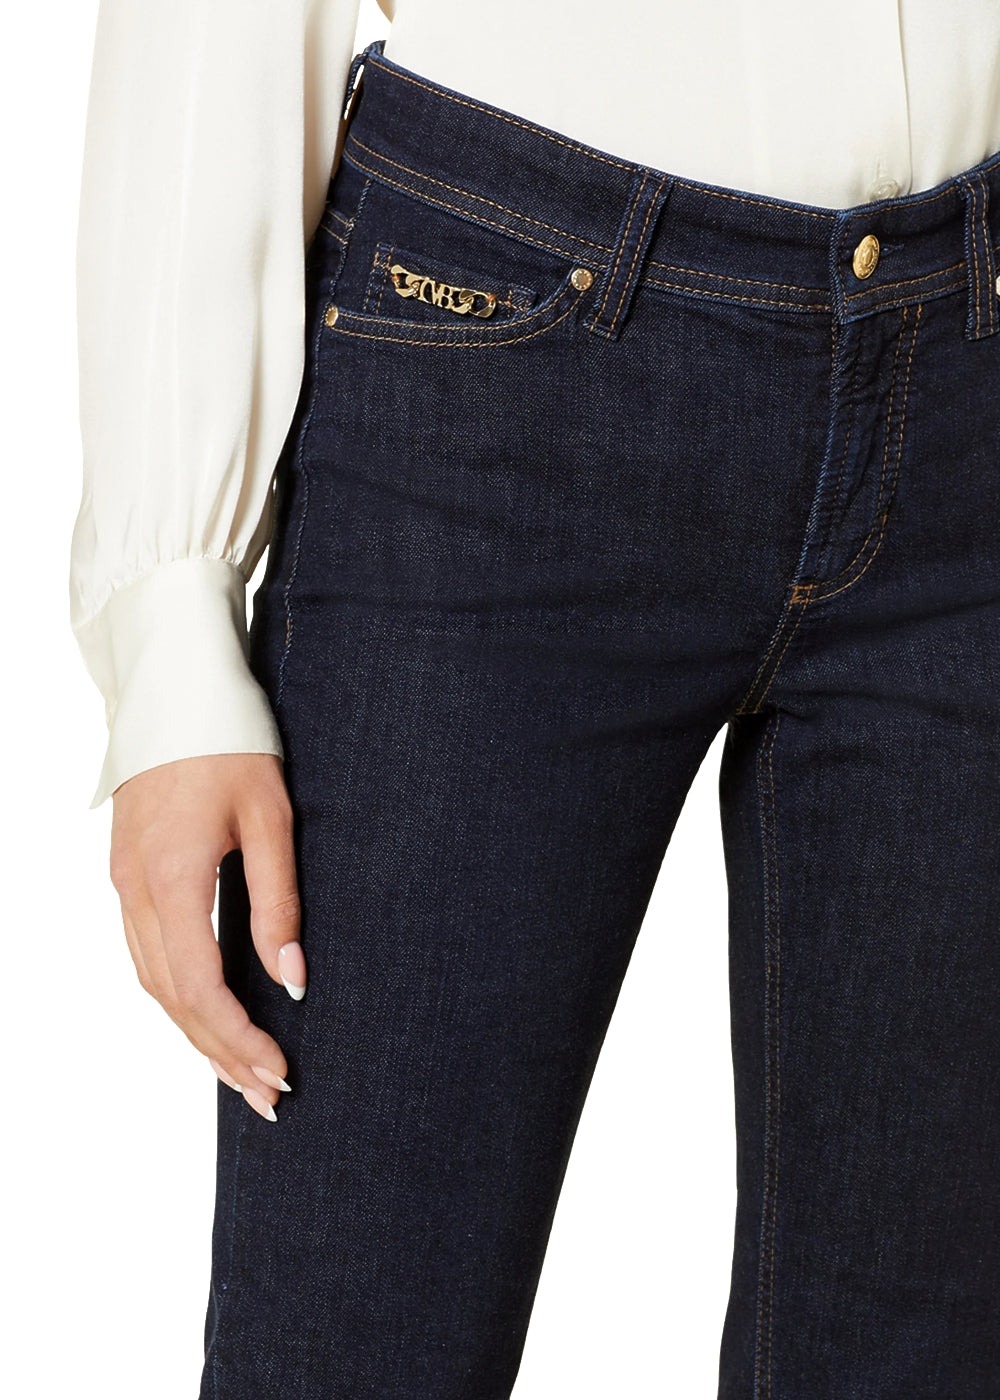 Cambio Jeans Piper cropped in dunkelblau. 5-Pocket Hose in weichen Denim Stretch mit Goldkette von Cambio online kaufen. 7/8 Jeans in cleanem indigo blau mit schmalem Schnitt aus der neuen Cambio Kollektion.